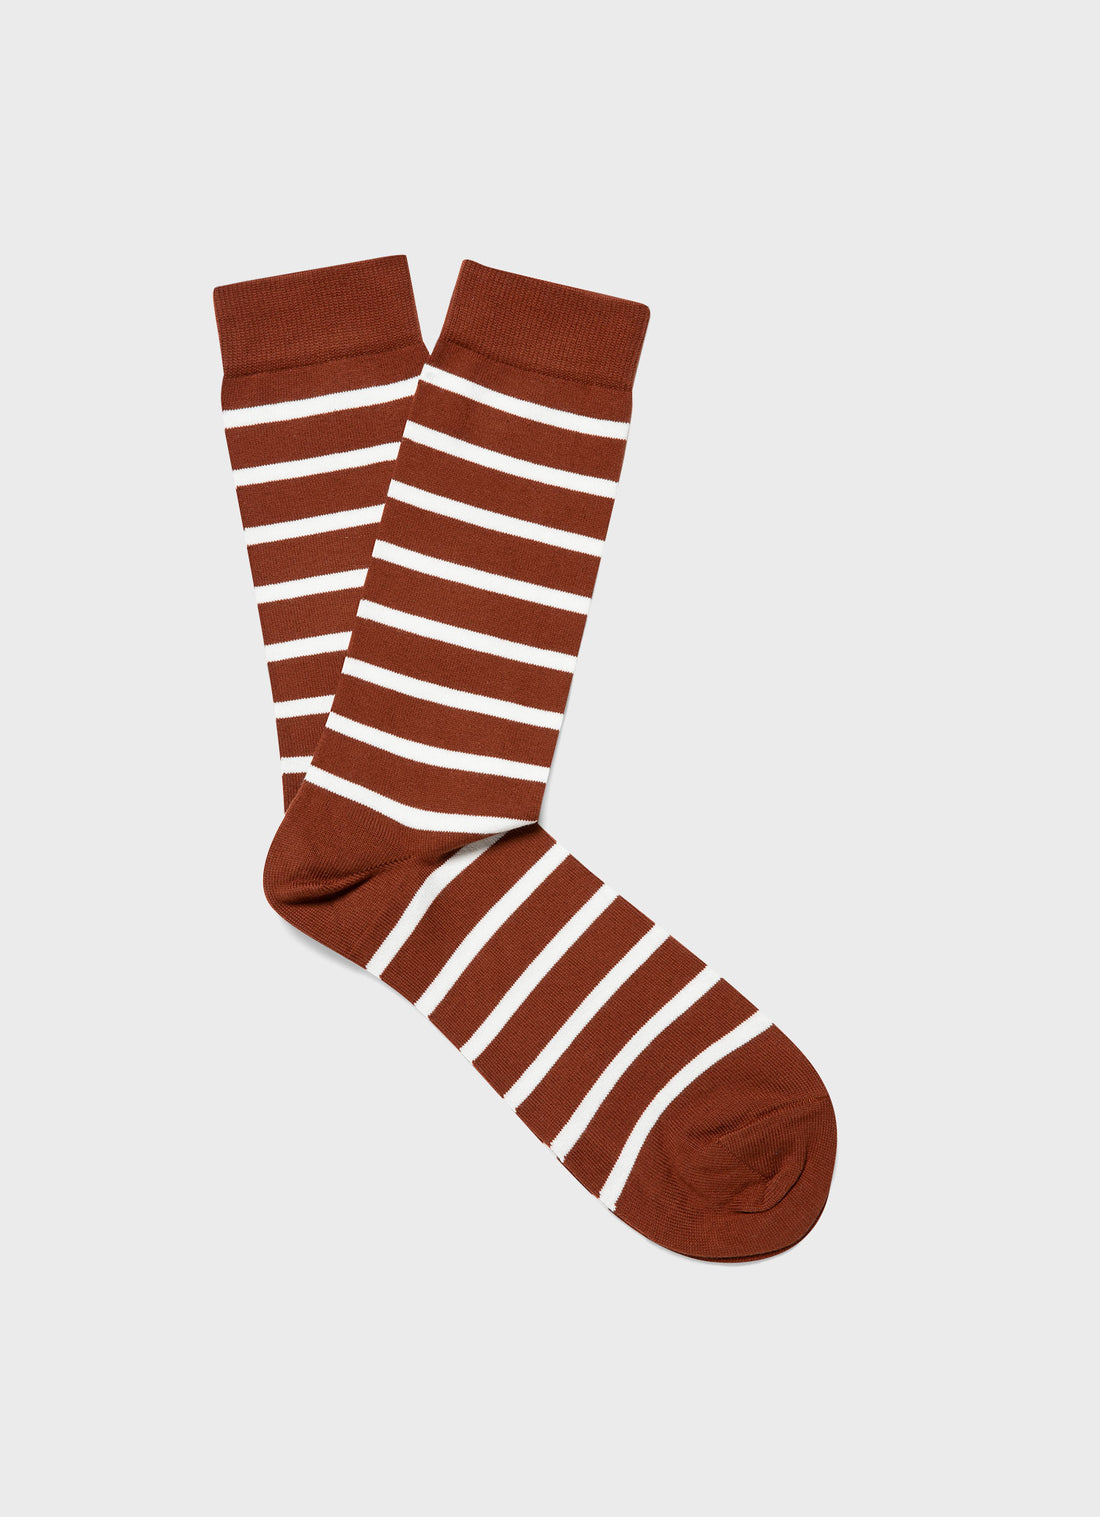 Men's Cotton Socks in Tobacco/Ecru Breton Stripe